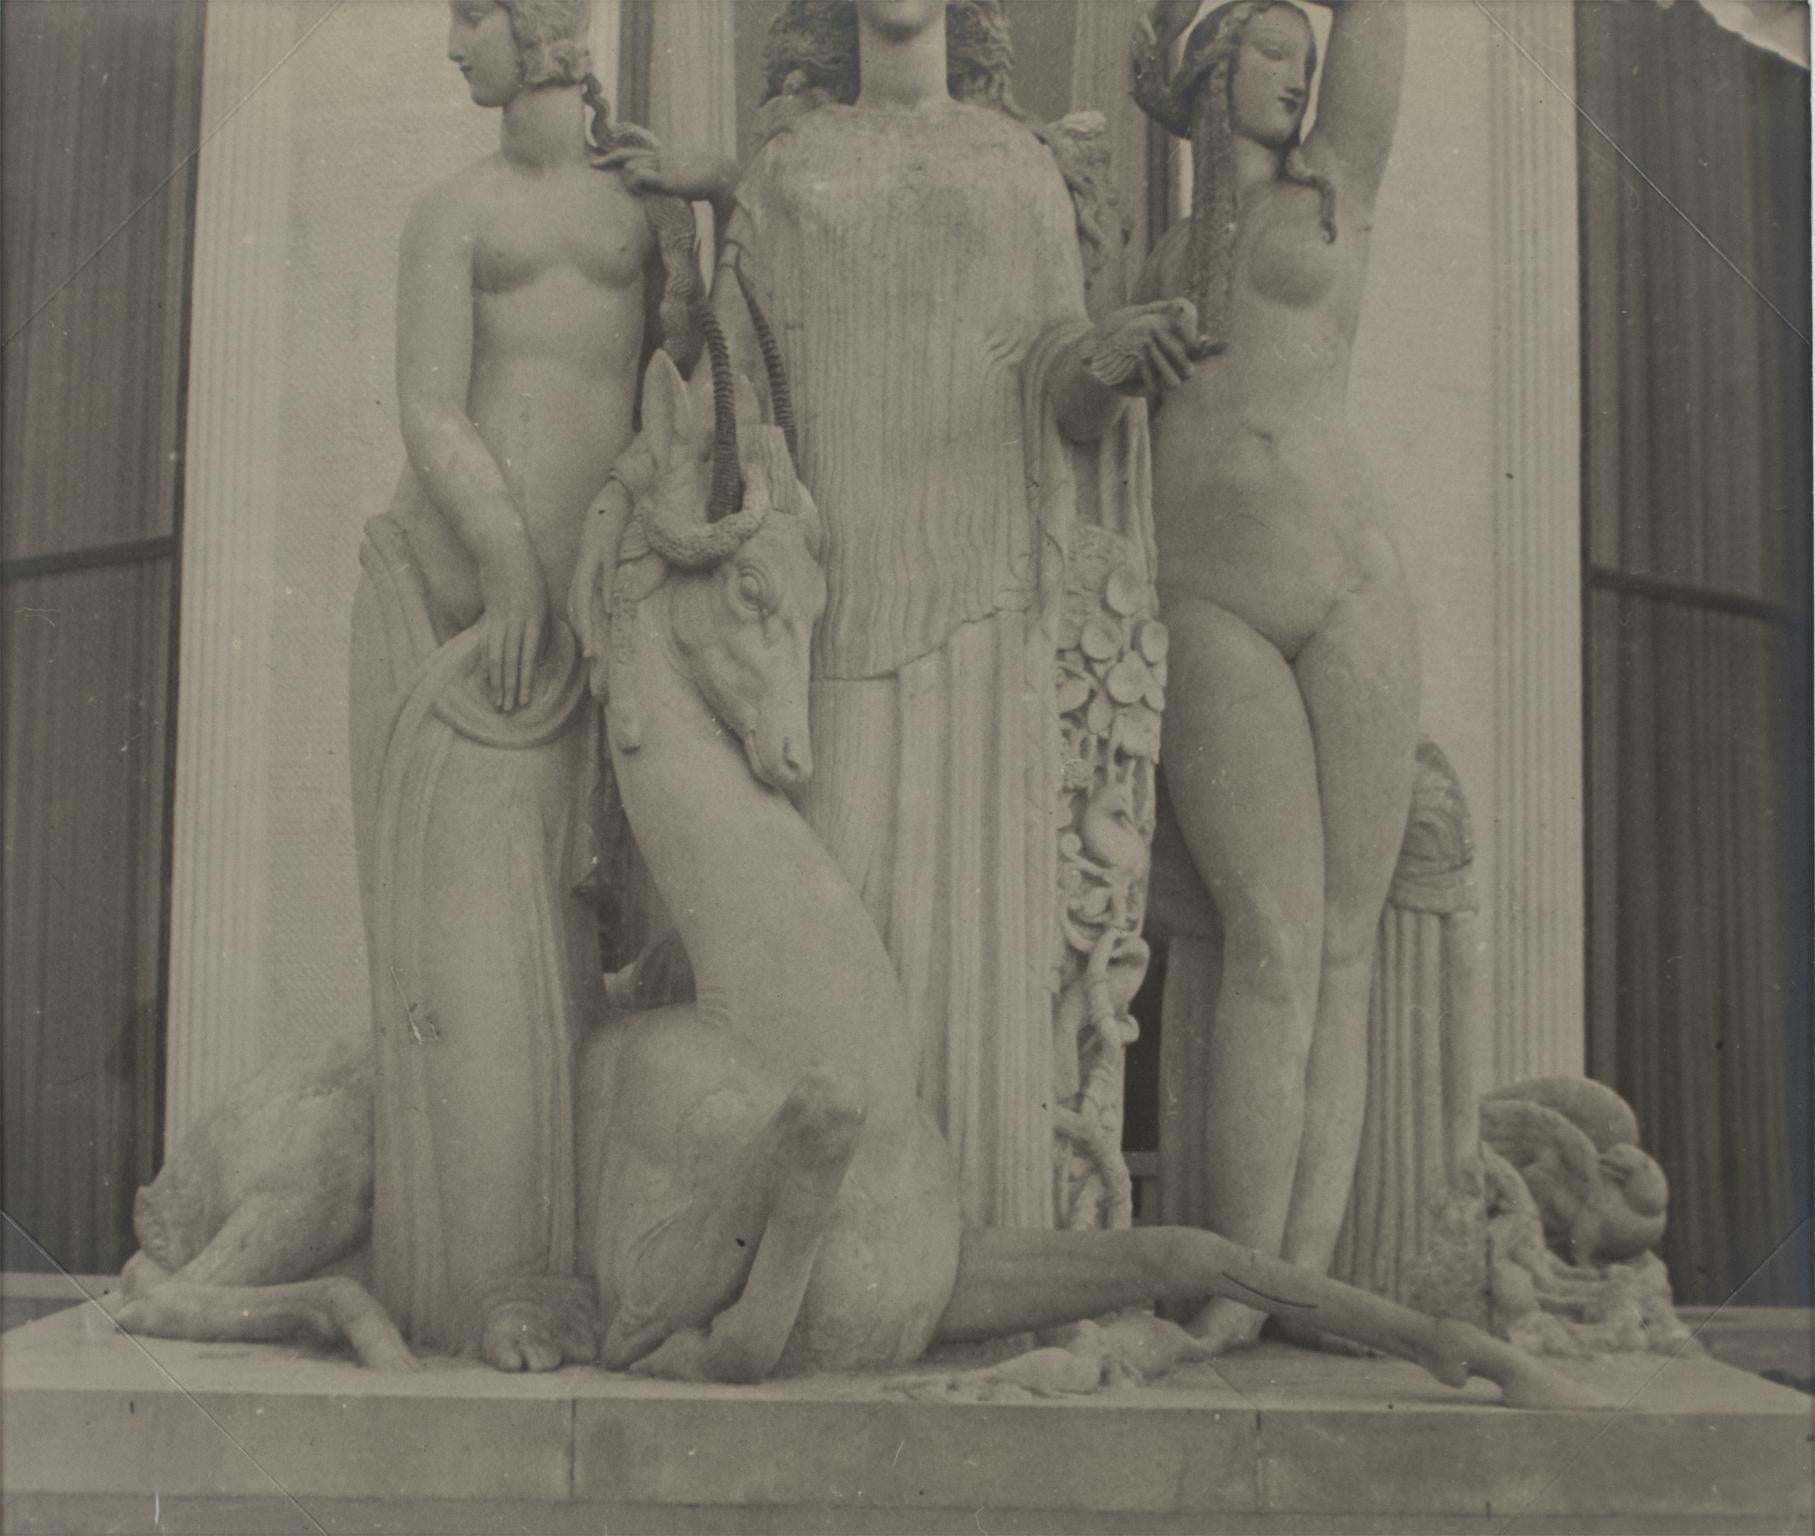 Paris, exposition d'art décoratif 1925, Pavillon Ruhlmann, photographies B et W